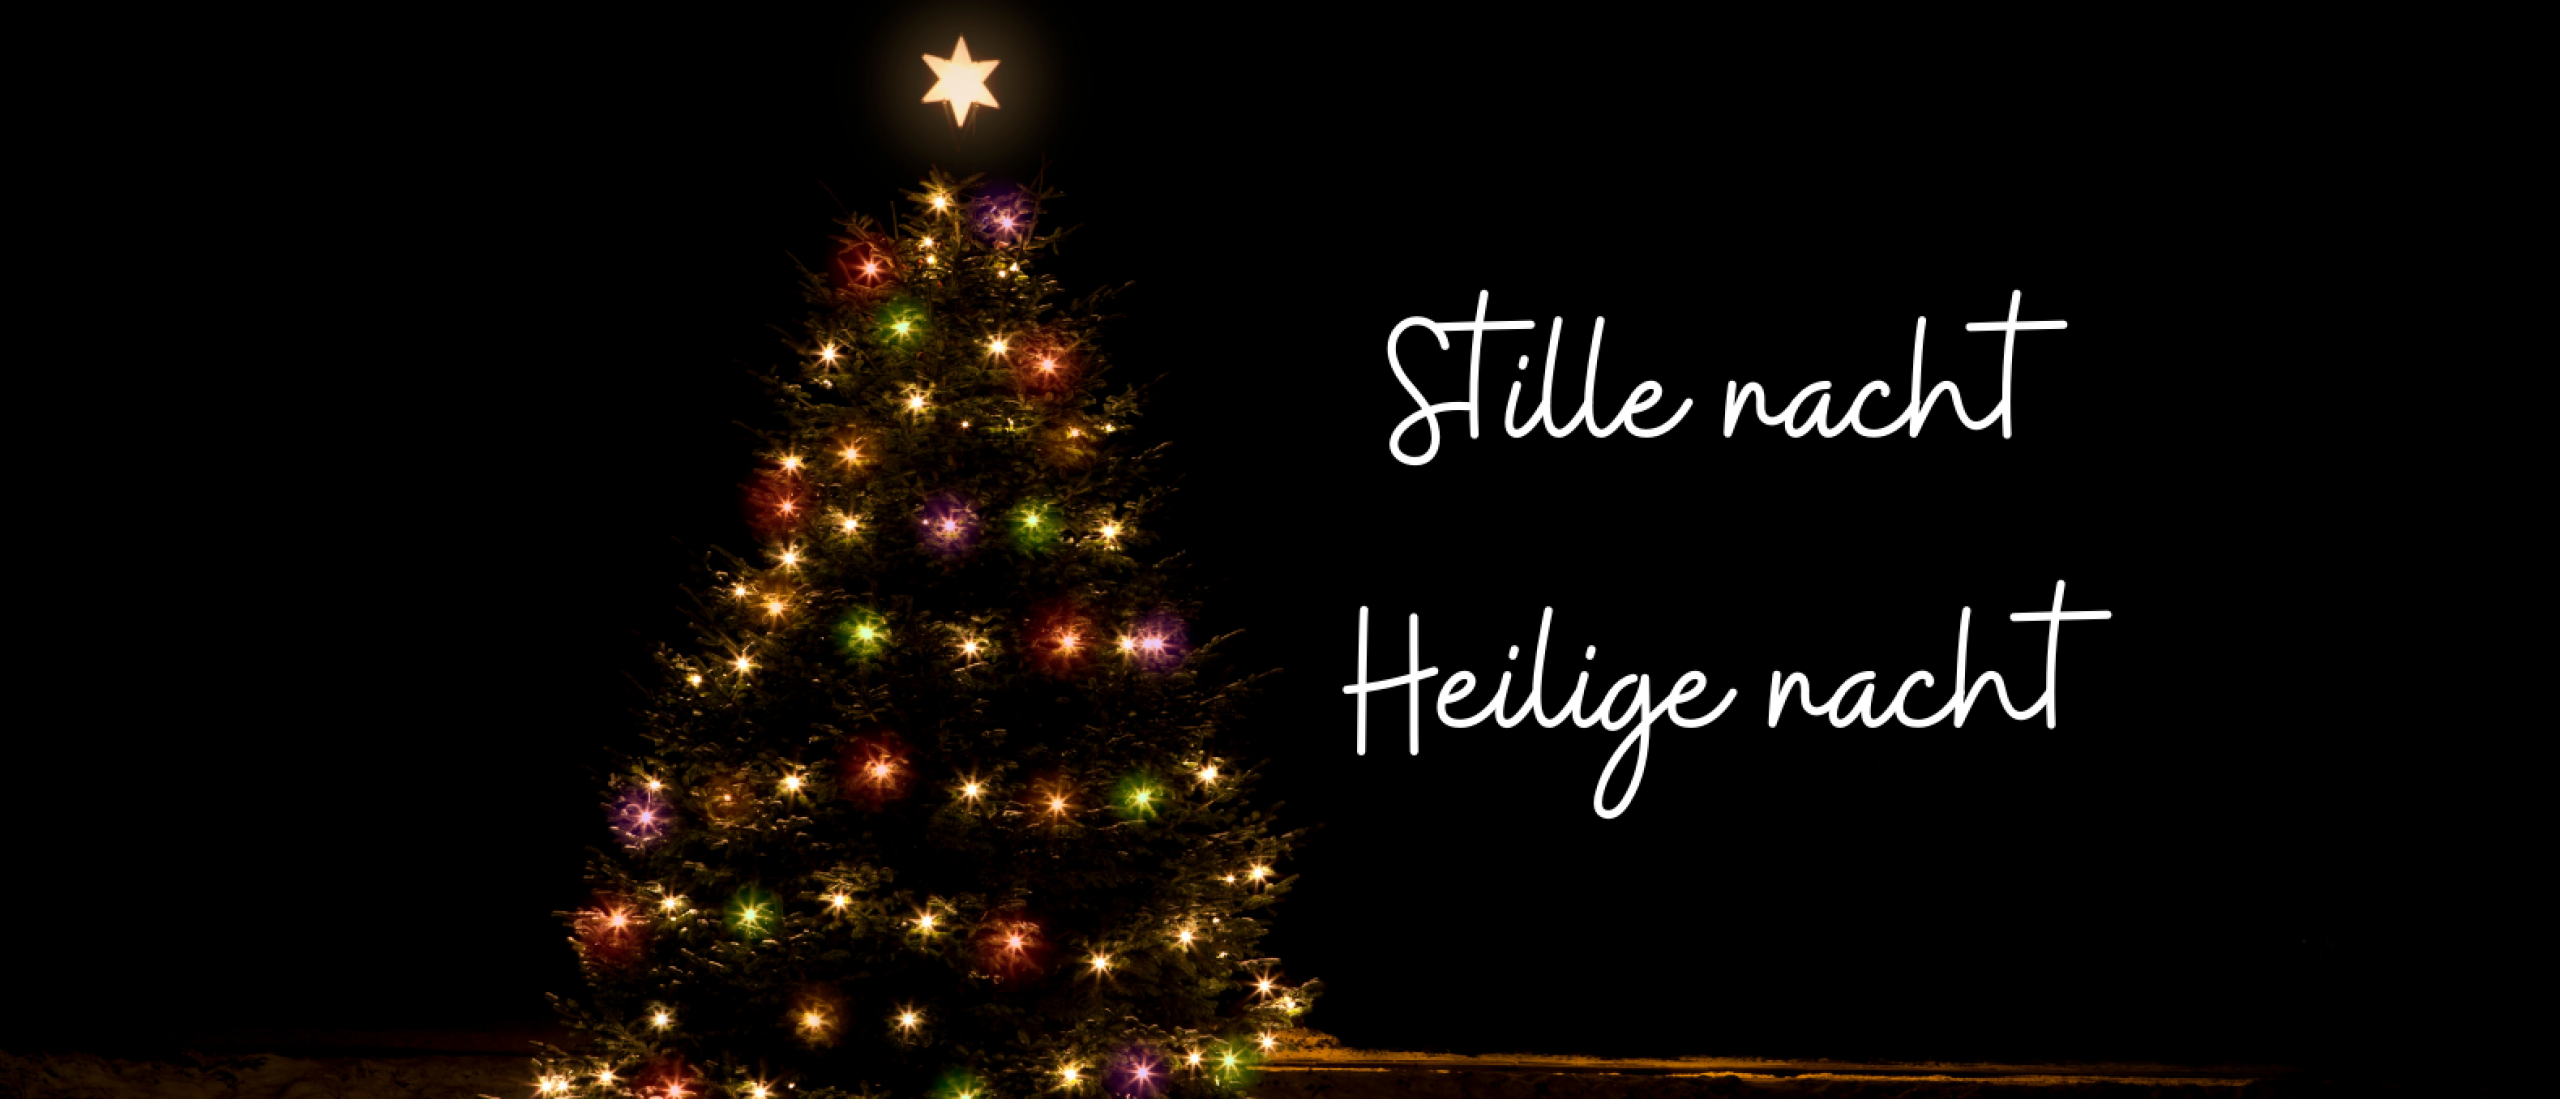 Stille nacht! Heilige nacht! Het beroemdste kerstlied uit Oostenrijk bestaat 203 jaar!